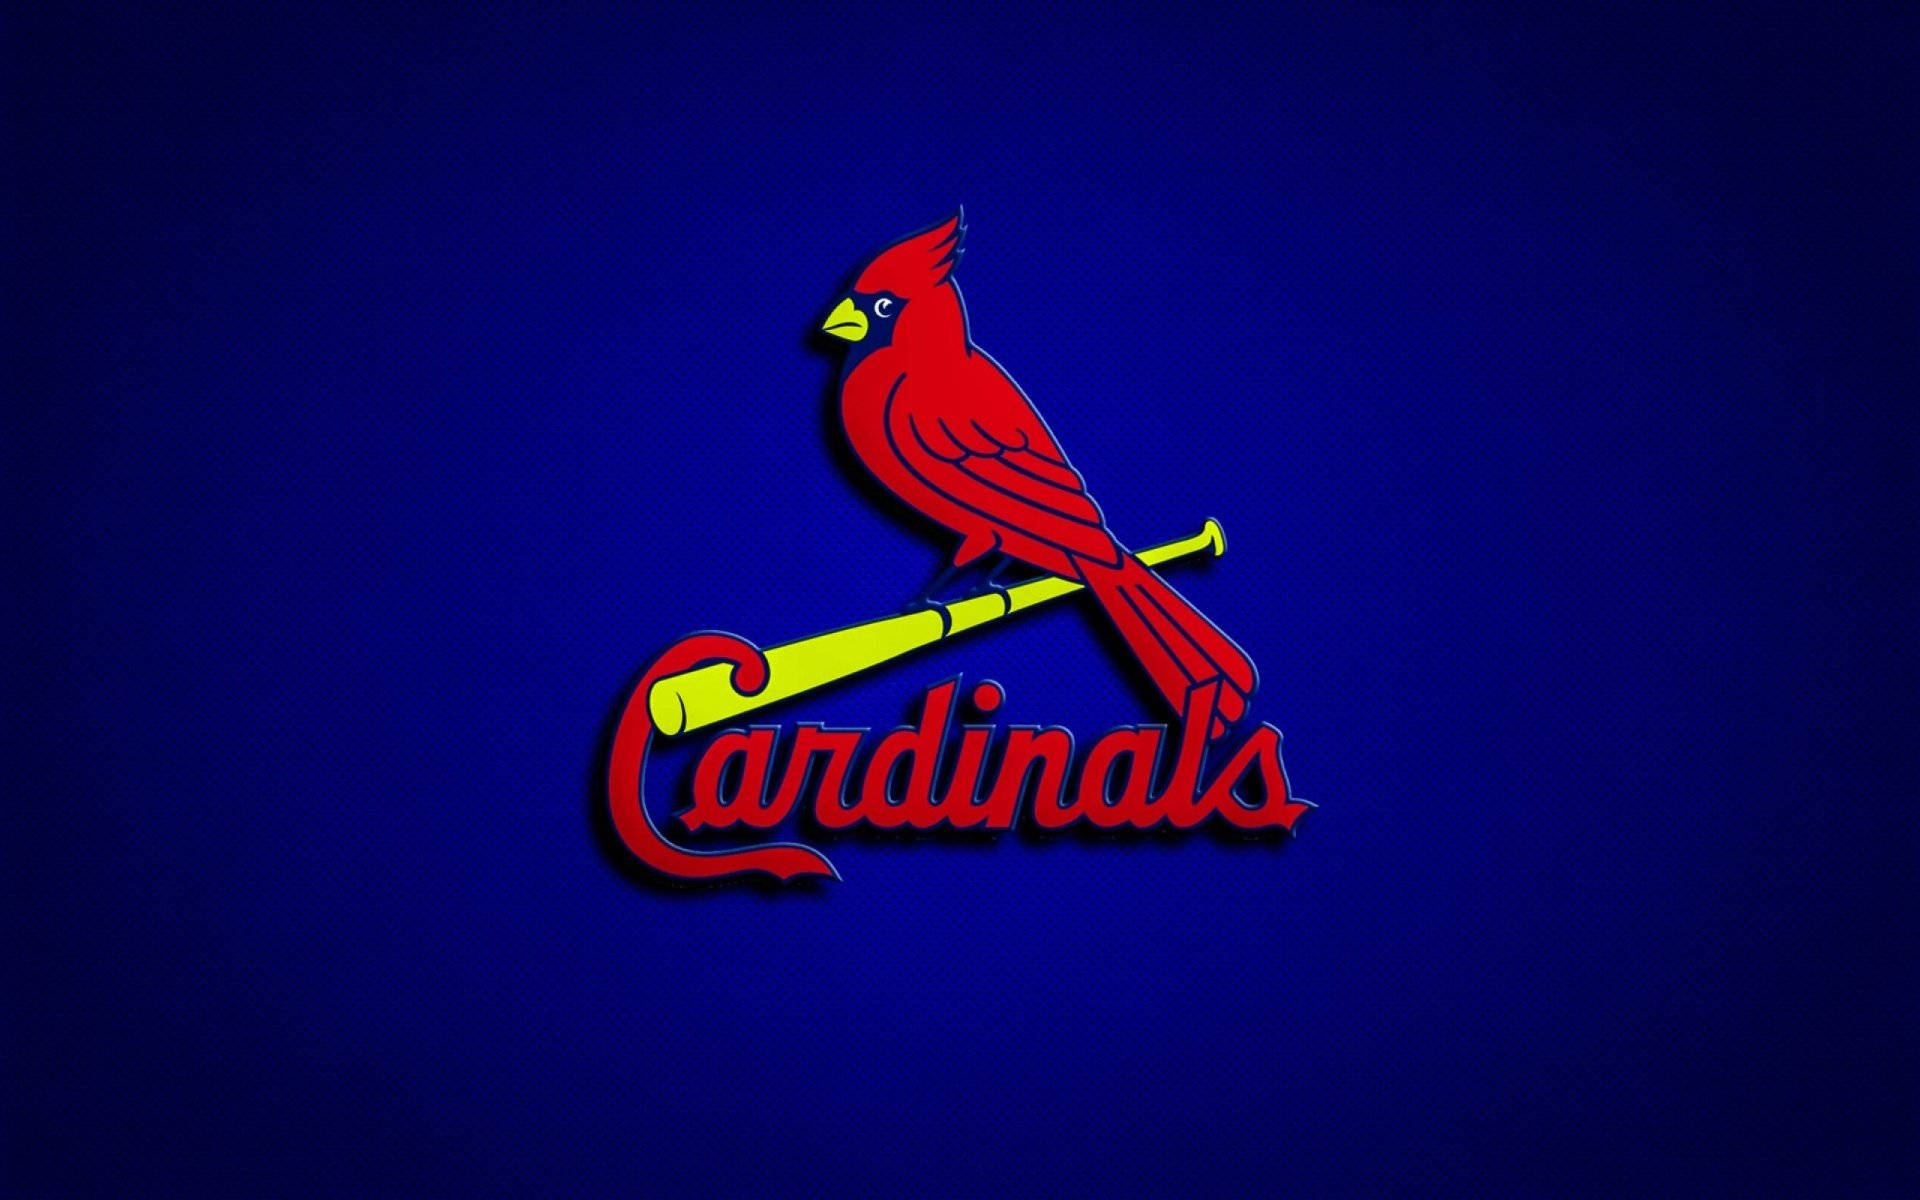 St Louis Cardinals Red Bird Emblem Background